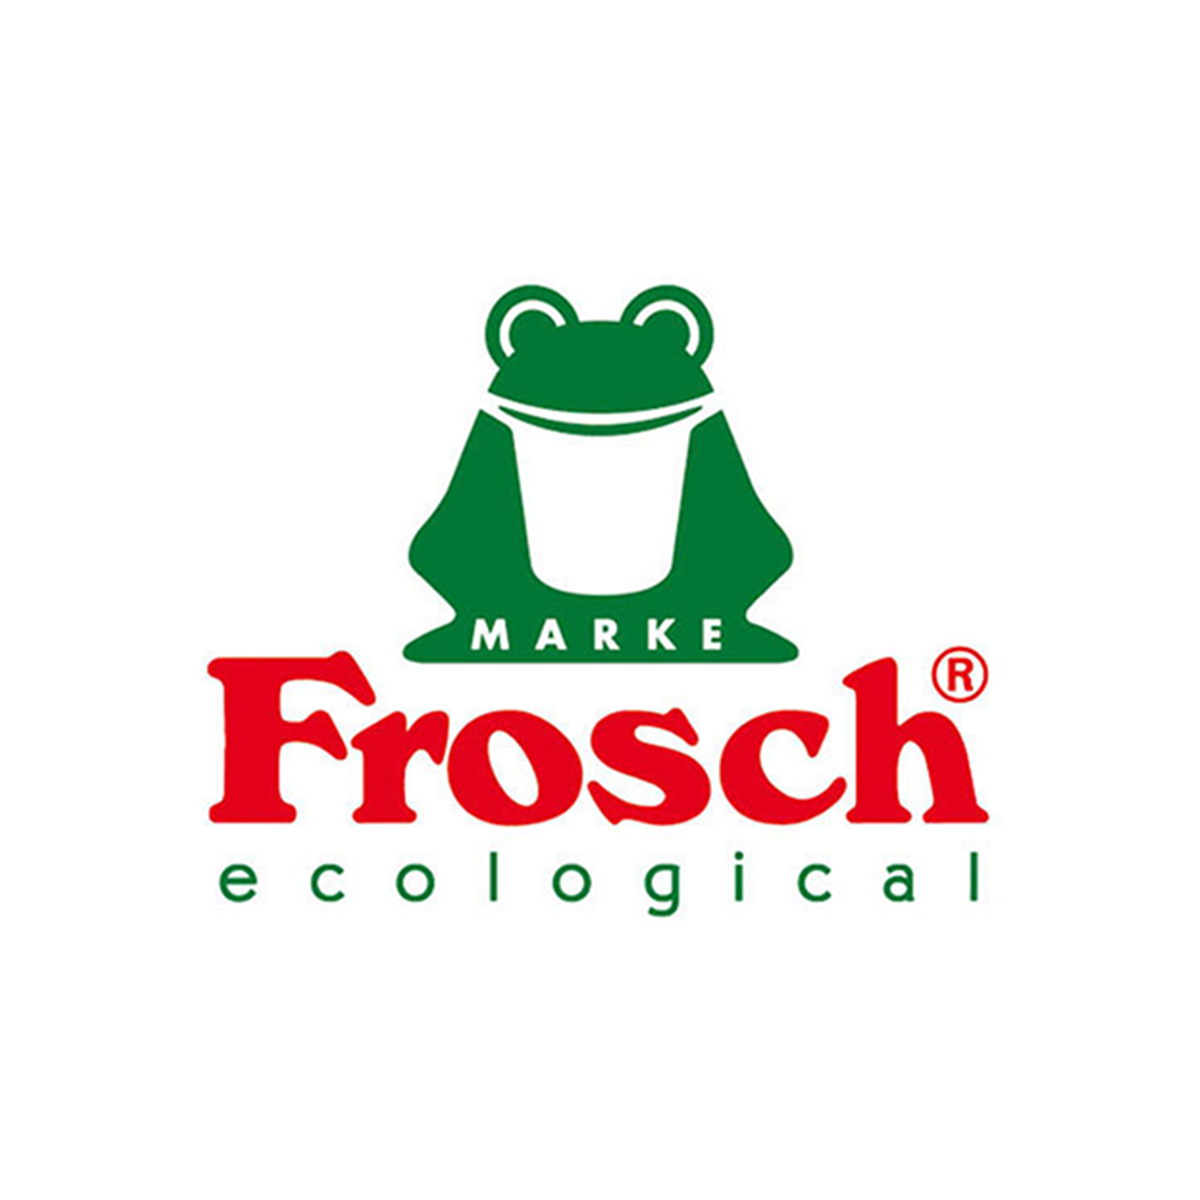 Lavavajillas Frosch 750 Ml Eco